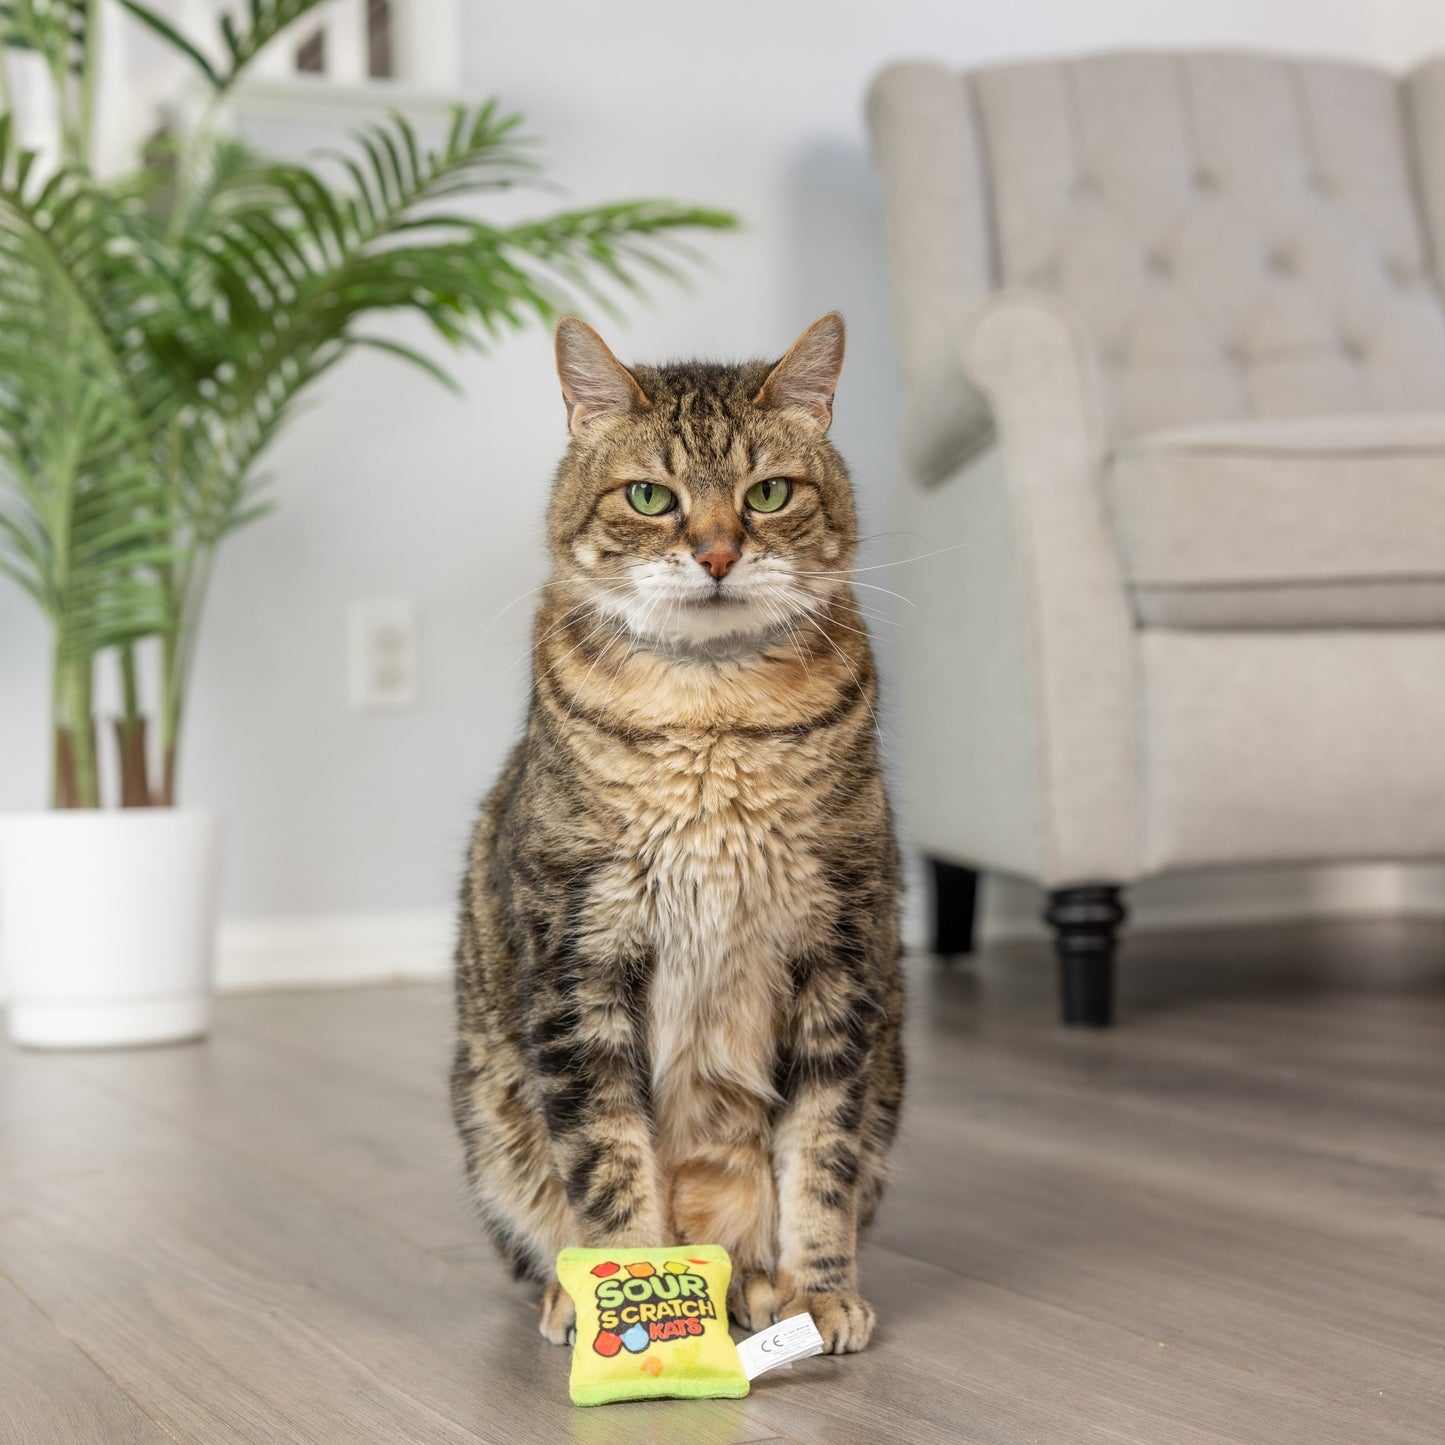 Sour Scratch Kats Cat Toy